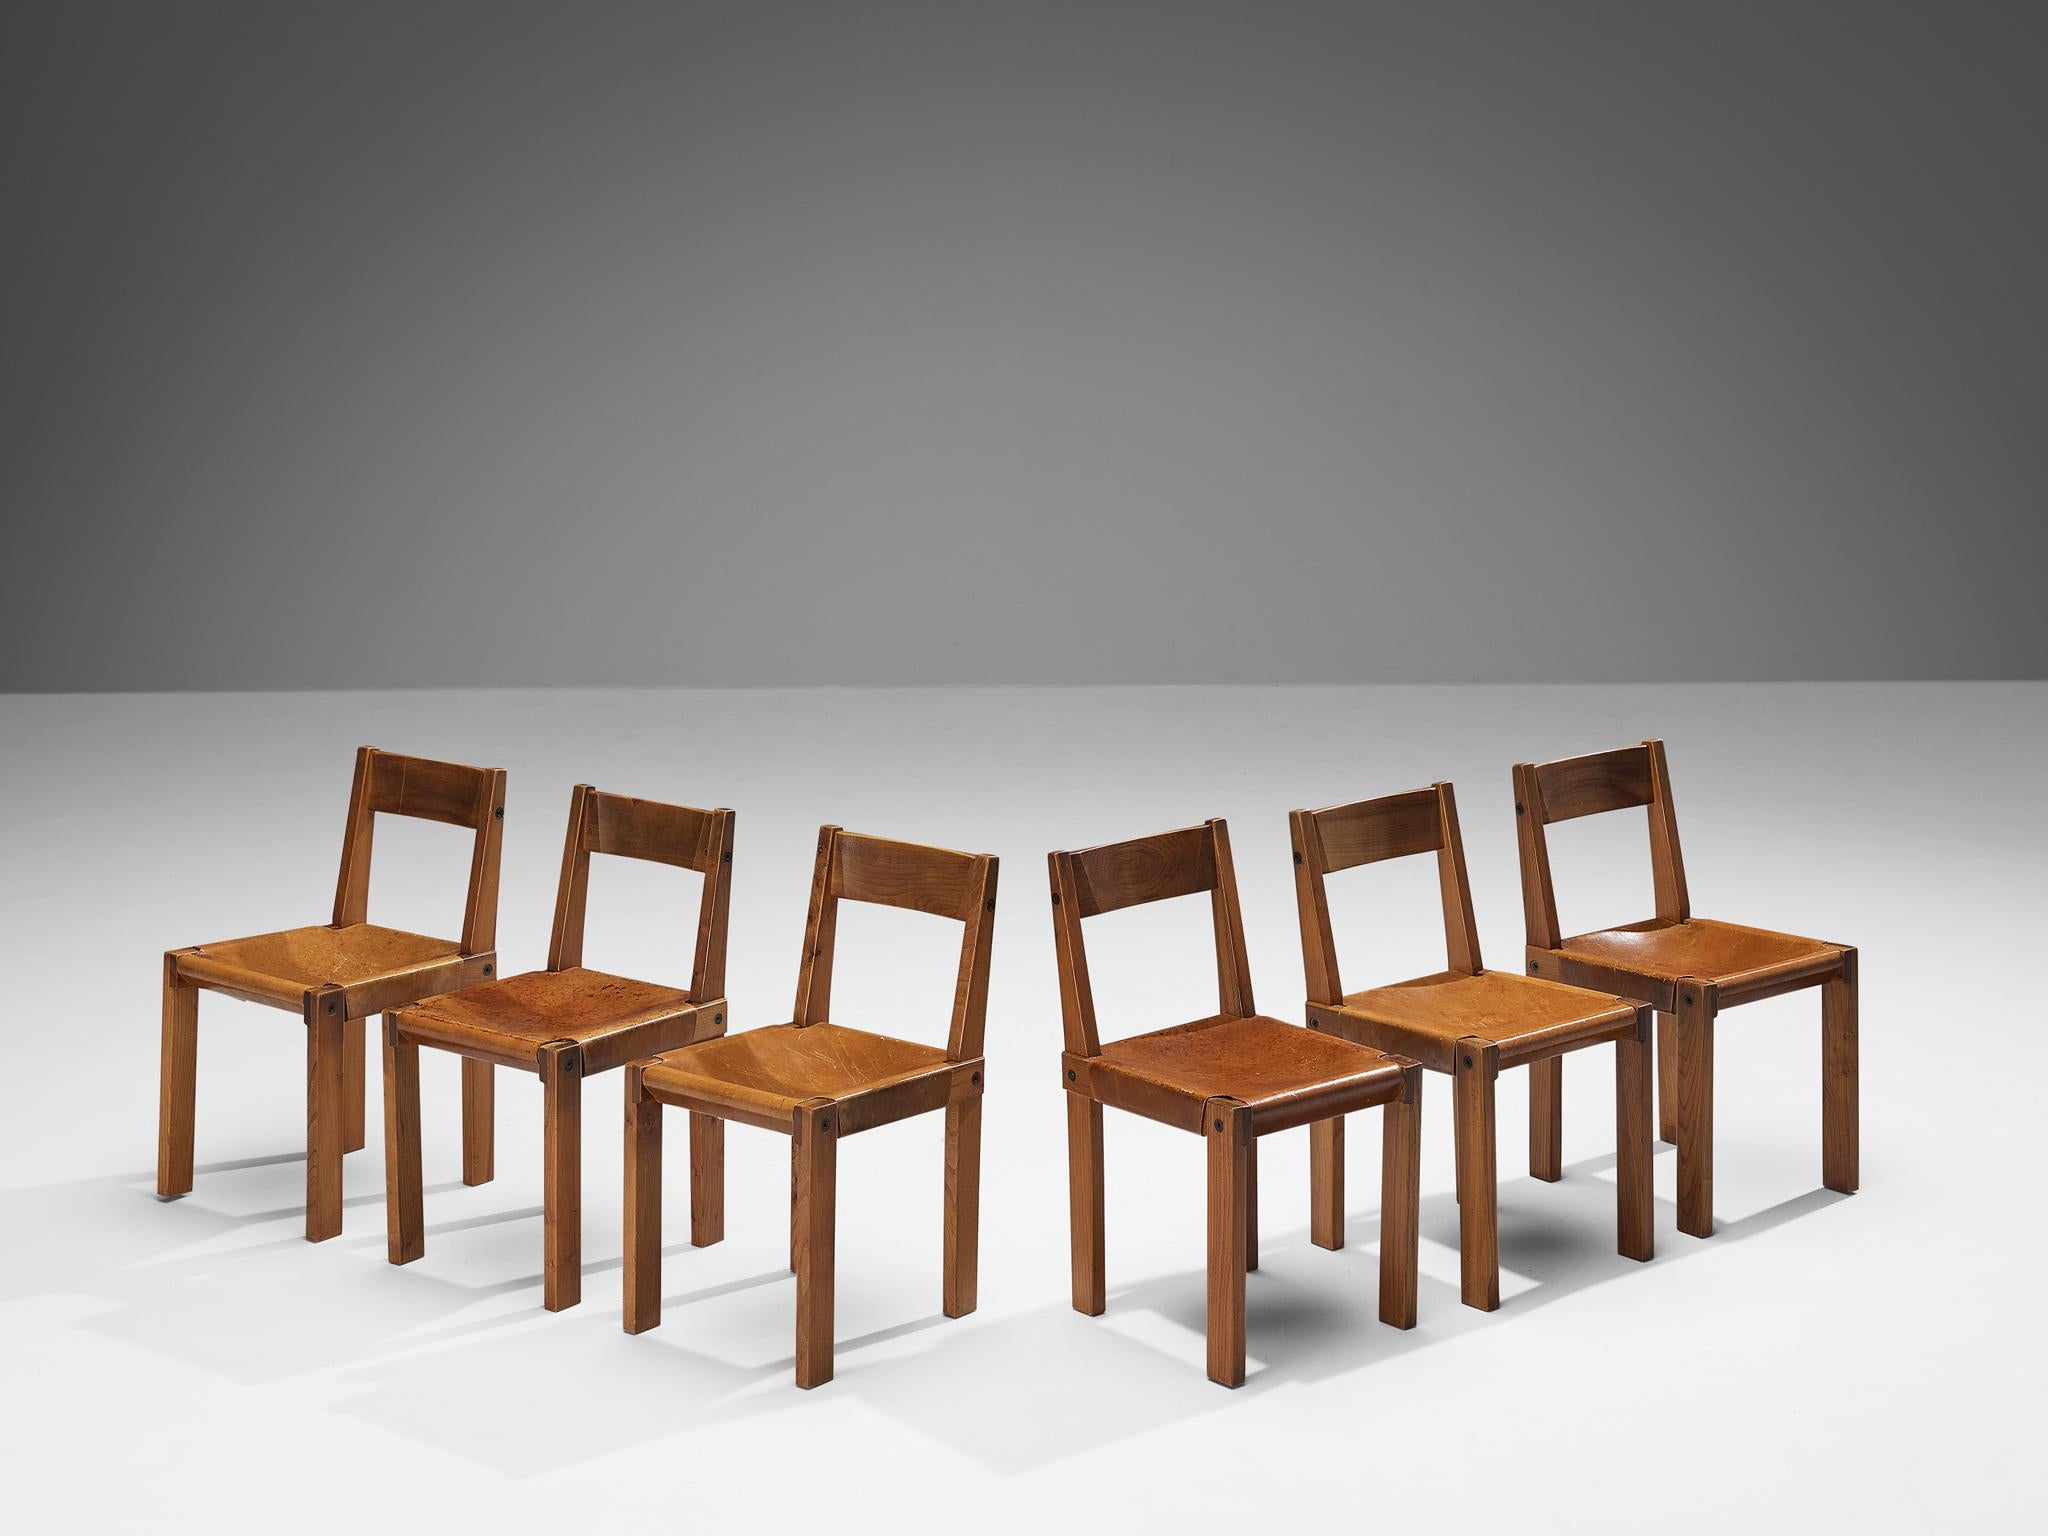 Pierre Corde, ensemble de six chaises de salle à manger, modèle 'S24', orme, cuir, corde, France, 1967.

Ces chaises sont les premières éditions conçues par Pierre Chapo, connu pour son utilisation caractéristique du bois d'orme massif et pour son